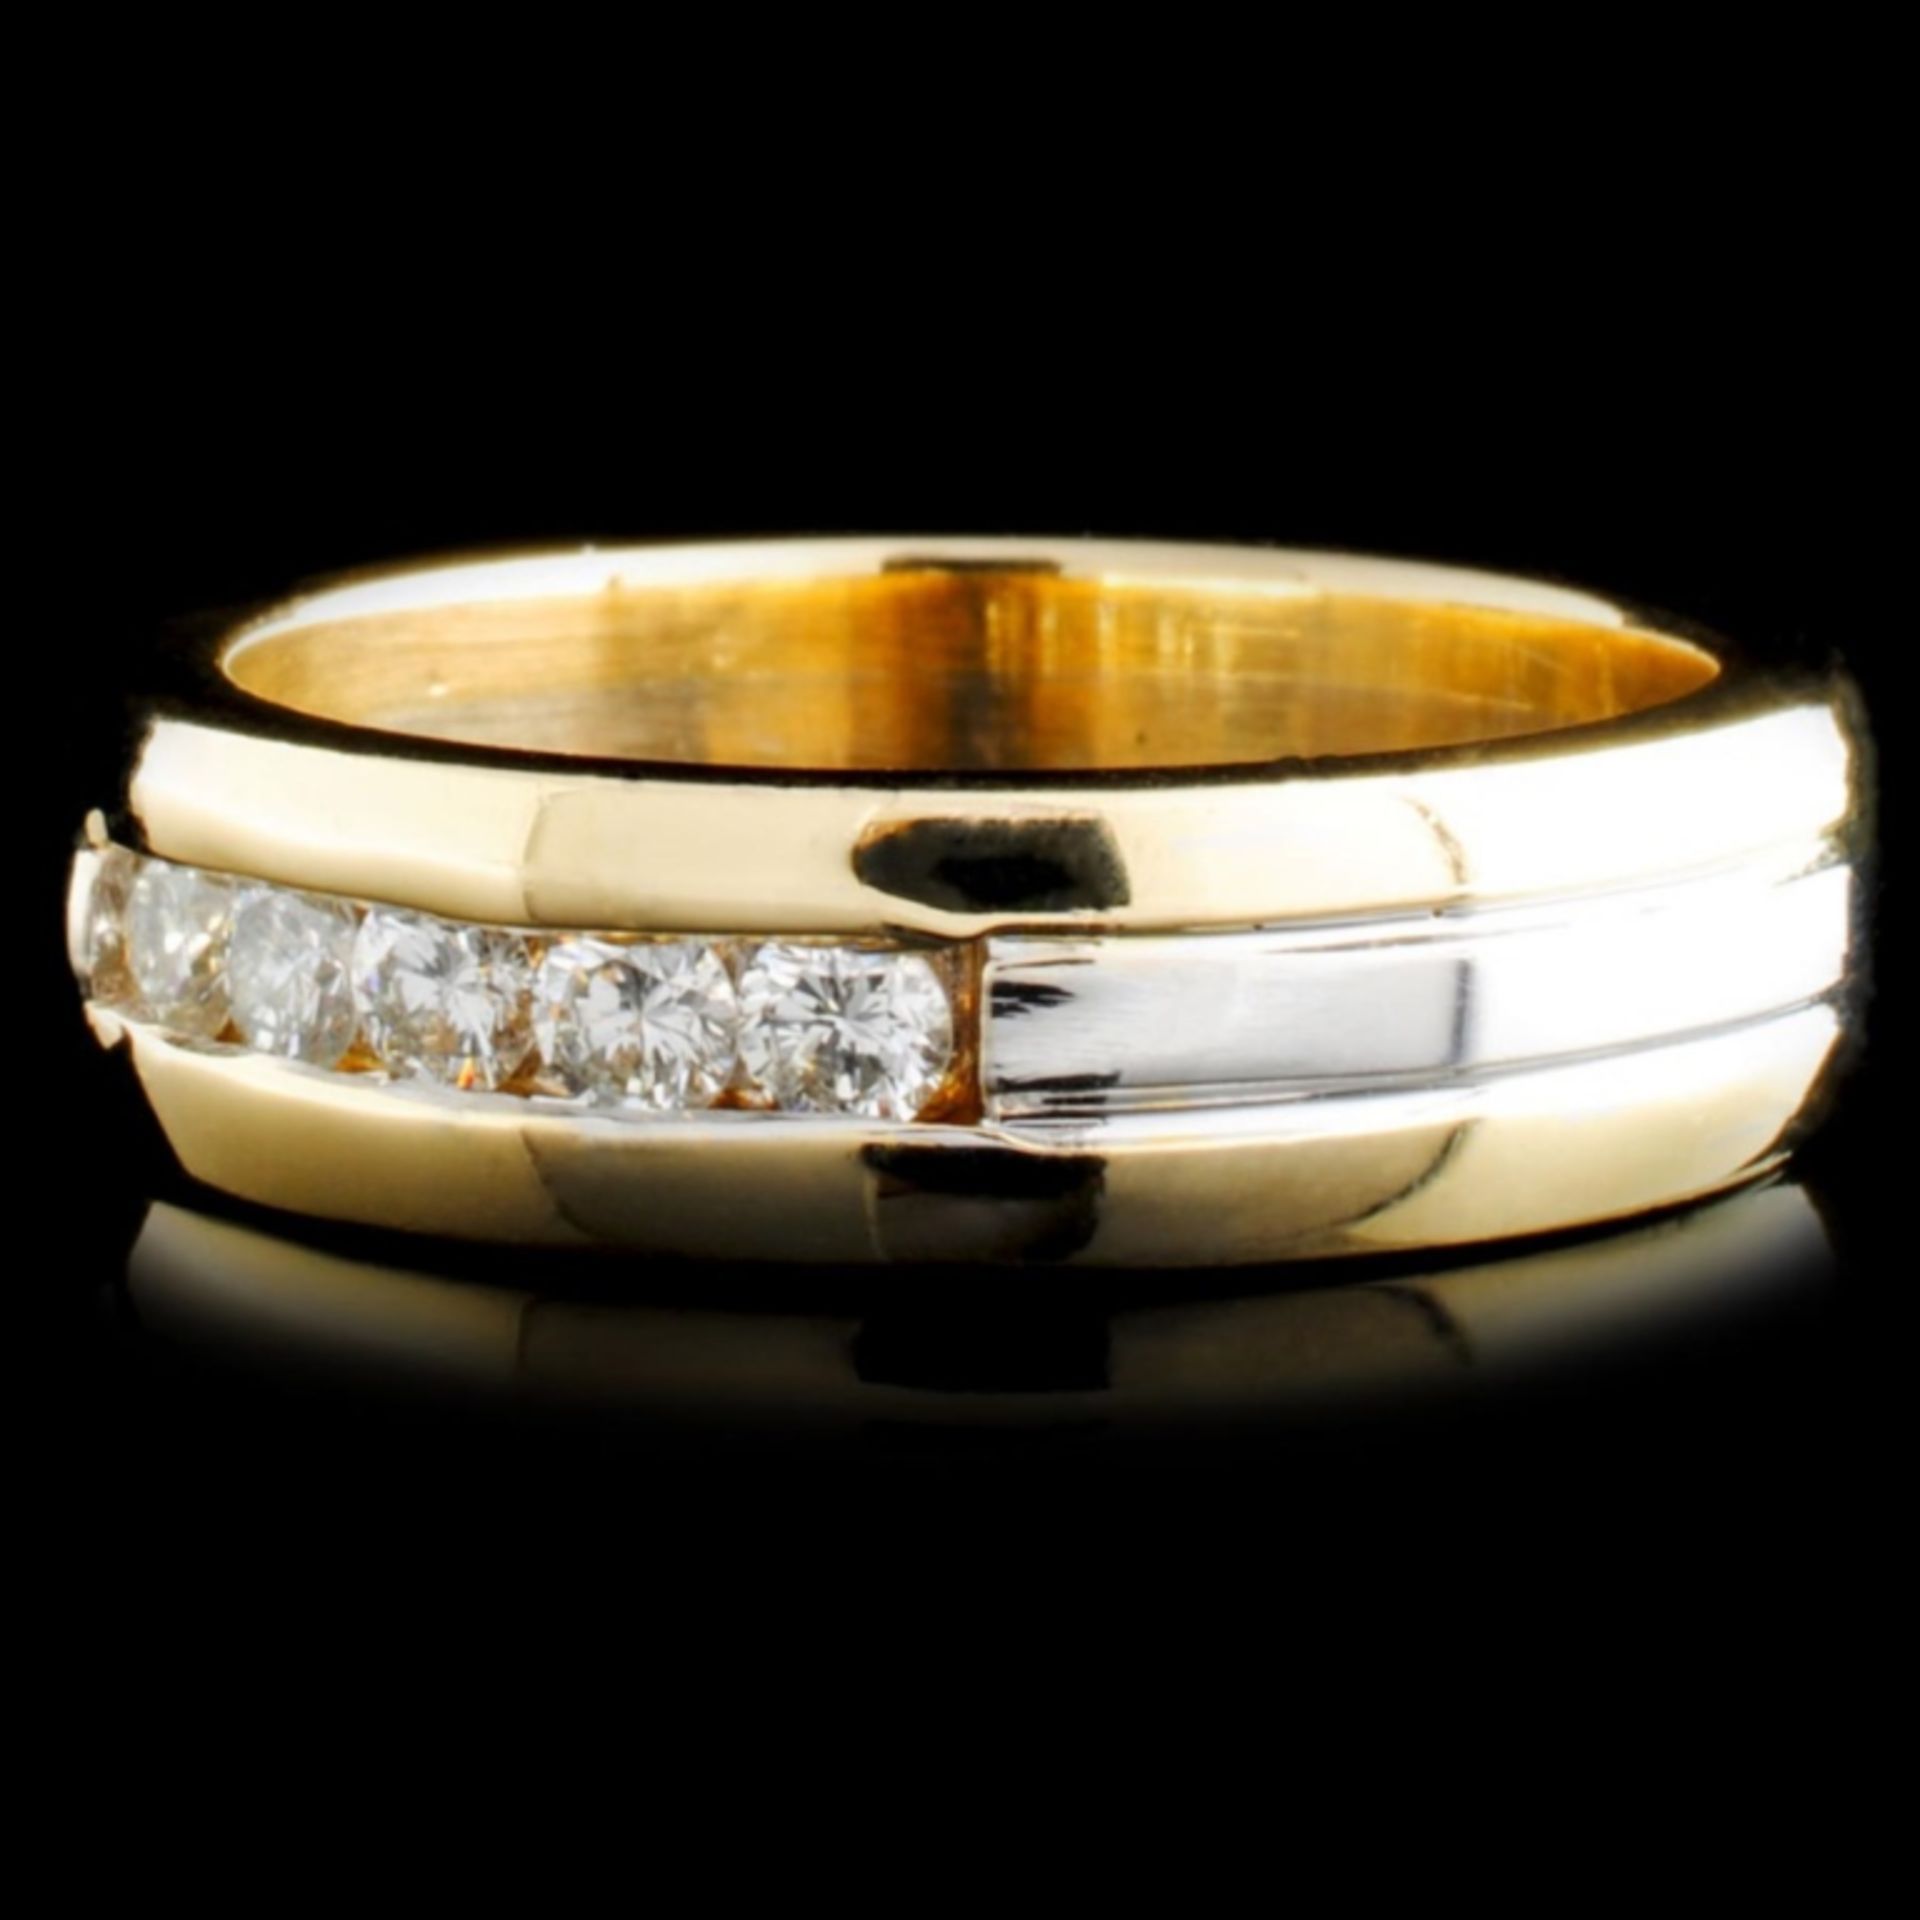 14K TT Gold 0.46ctw Diamond Ring - Image 2 of 2